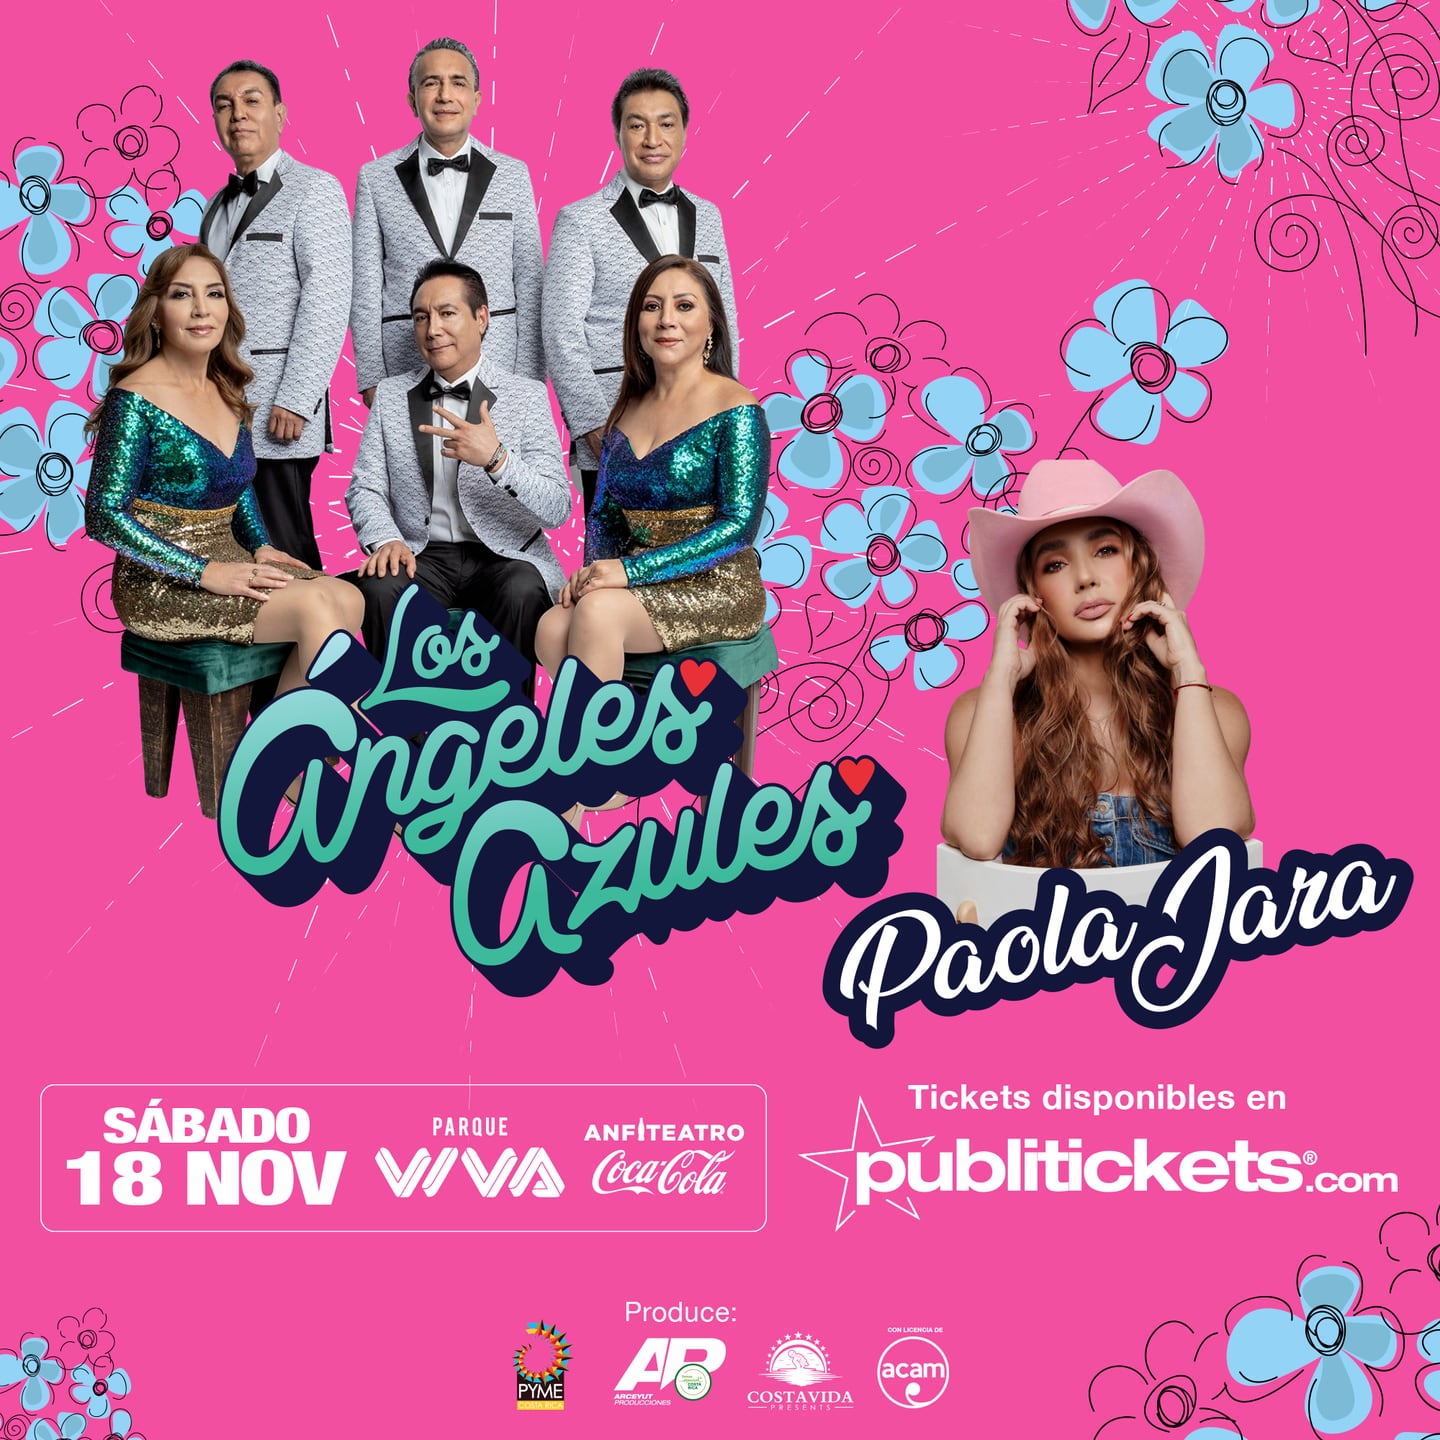 La banda mexicana Los Ángeles Azules se presentará con la colombiana Paola Jara el 18 de noviembre, quien dará su primer espectáculo en suelo tico.